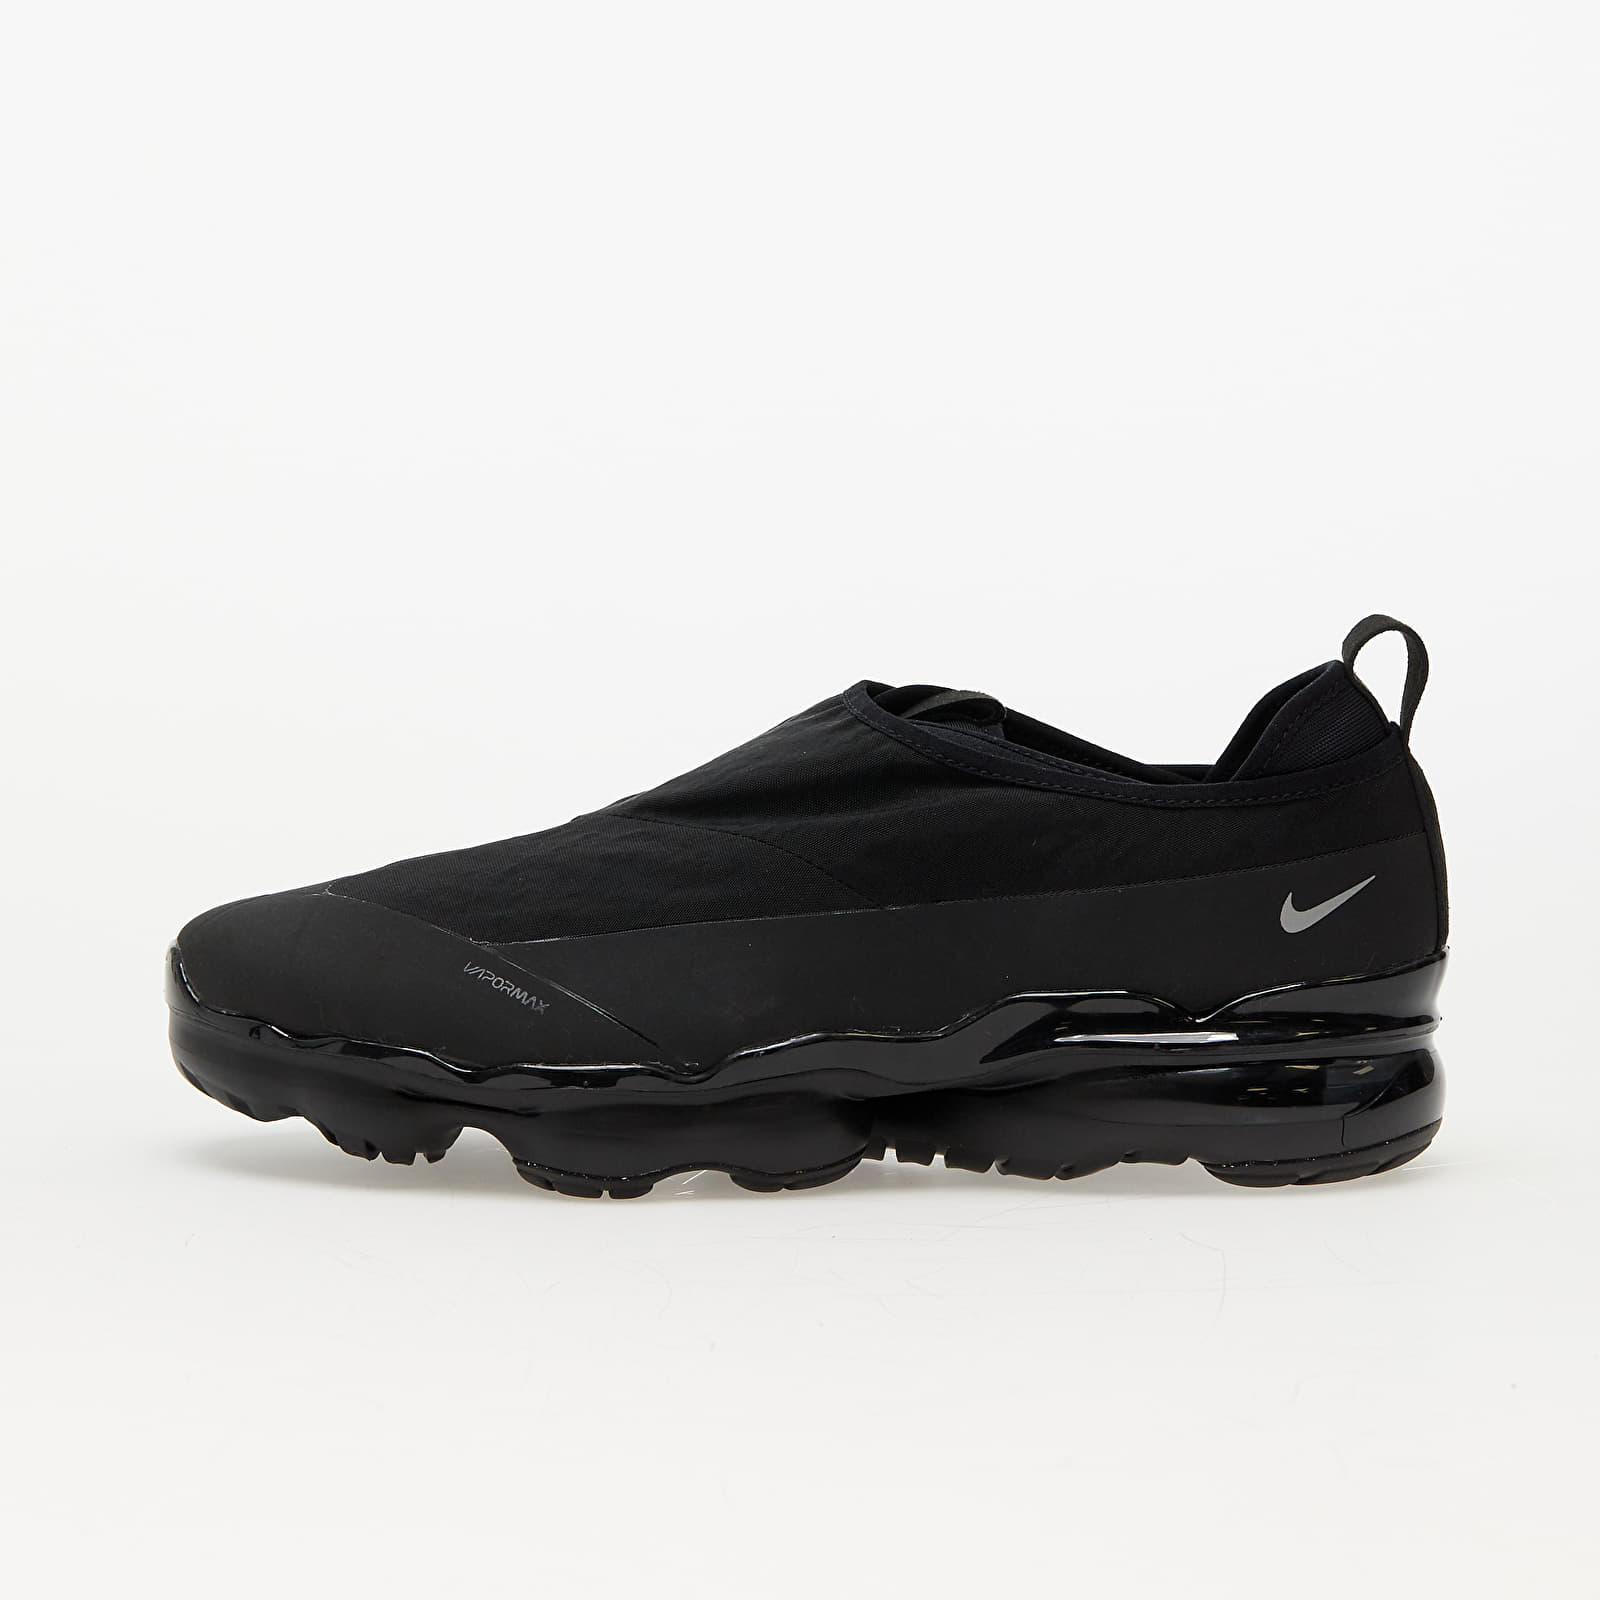 Încălțăminte și sneakerși pentru bărbați Nike Air Vapormax Moc Roam Black/ Metallic Silver- Black